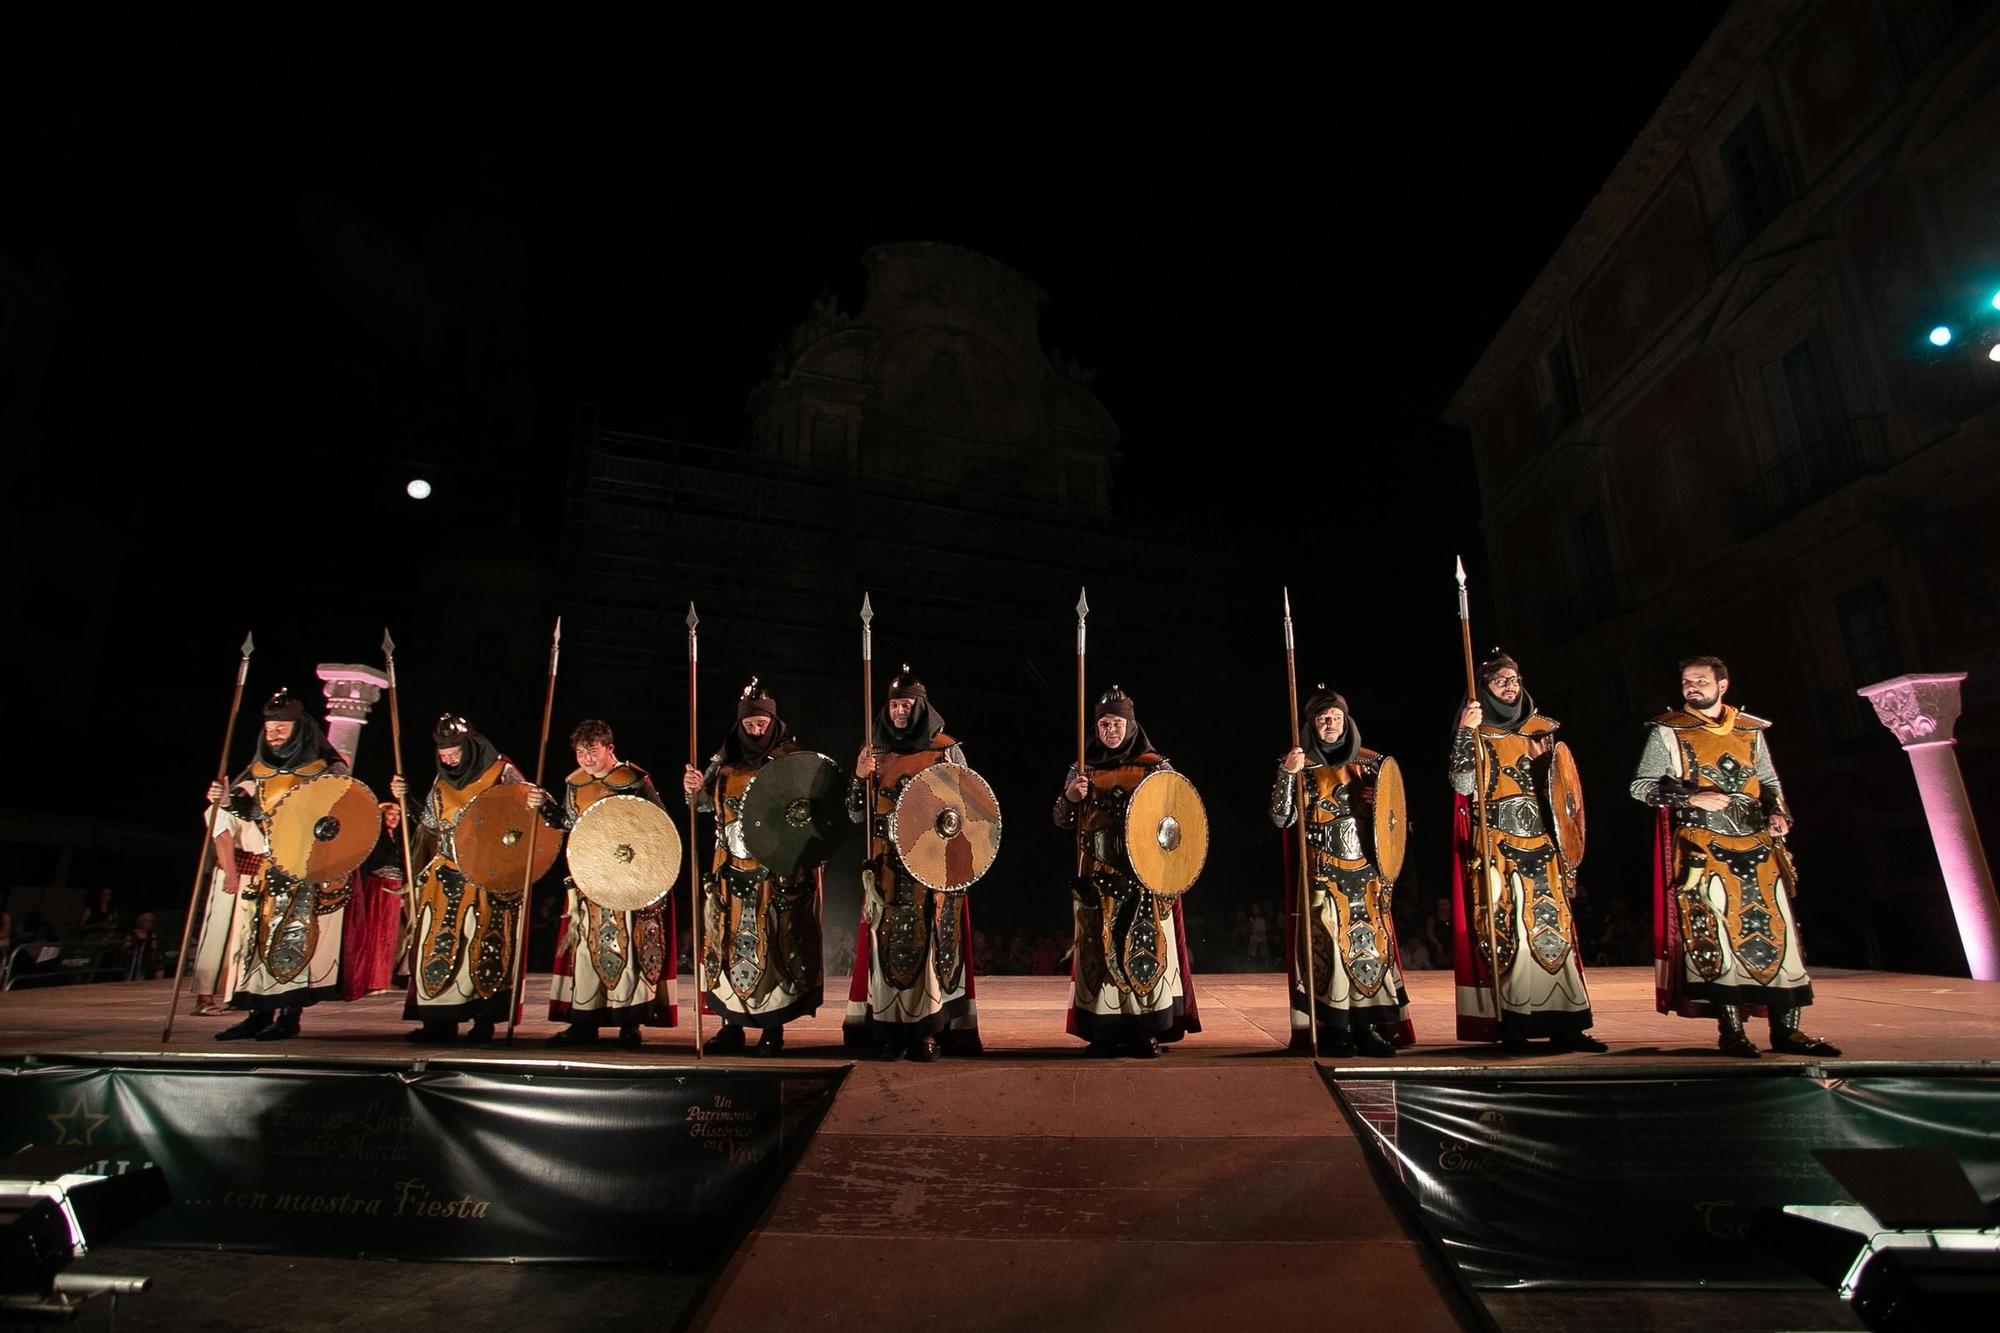 Las mejores fotos de la representación de Moros y Cristianos en Murcia